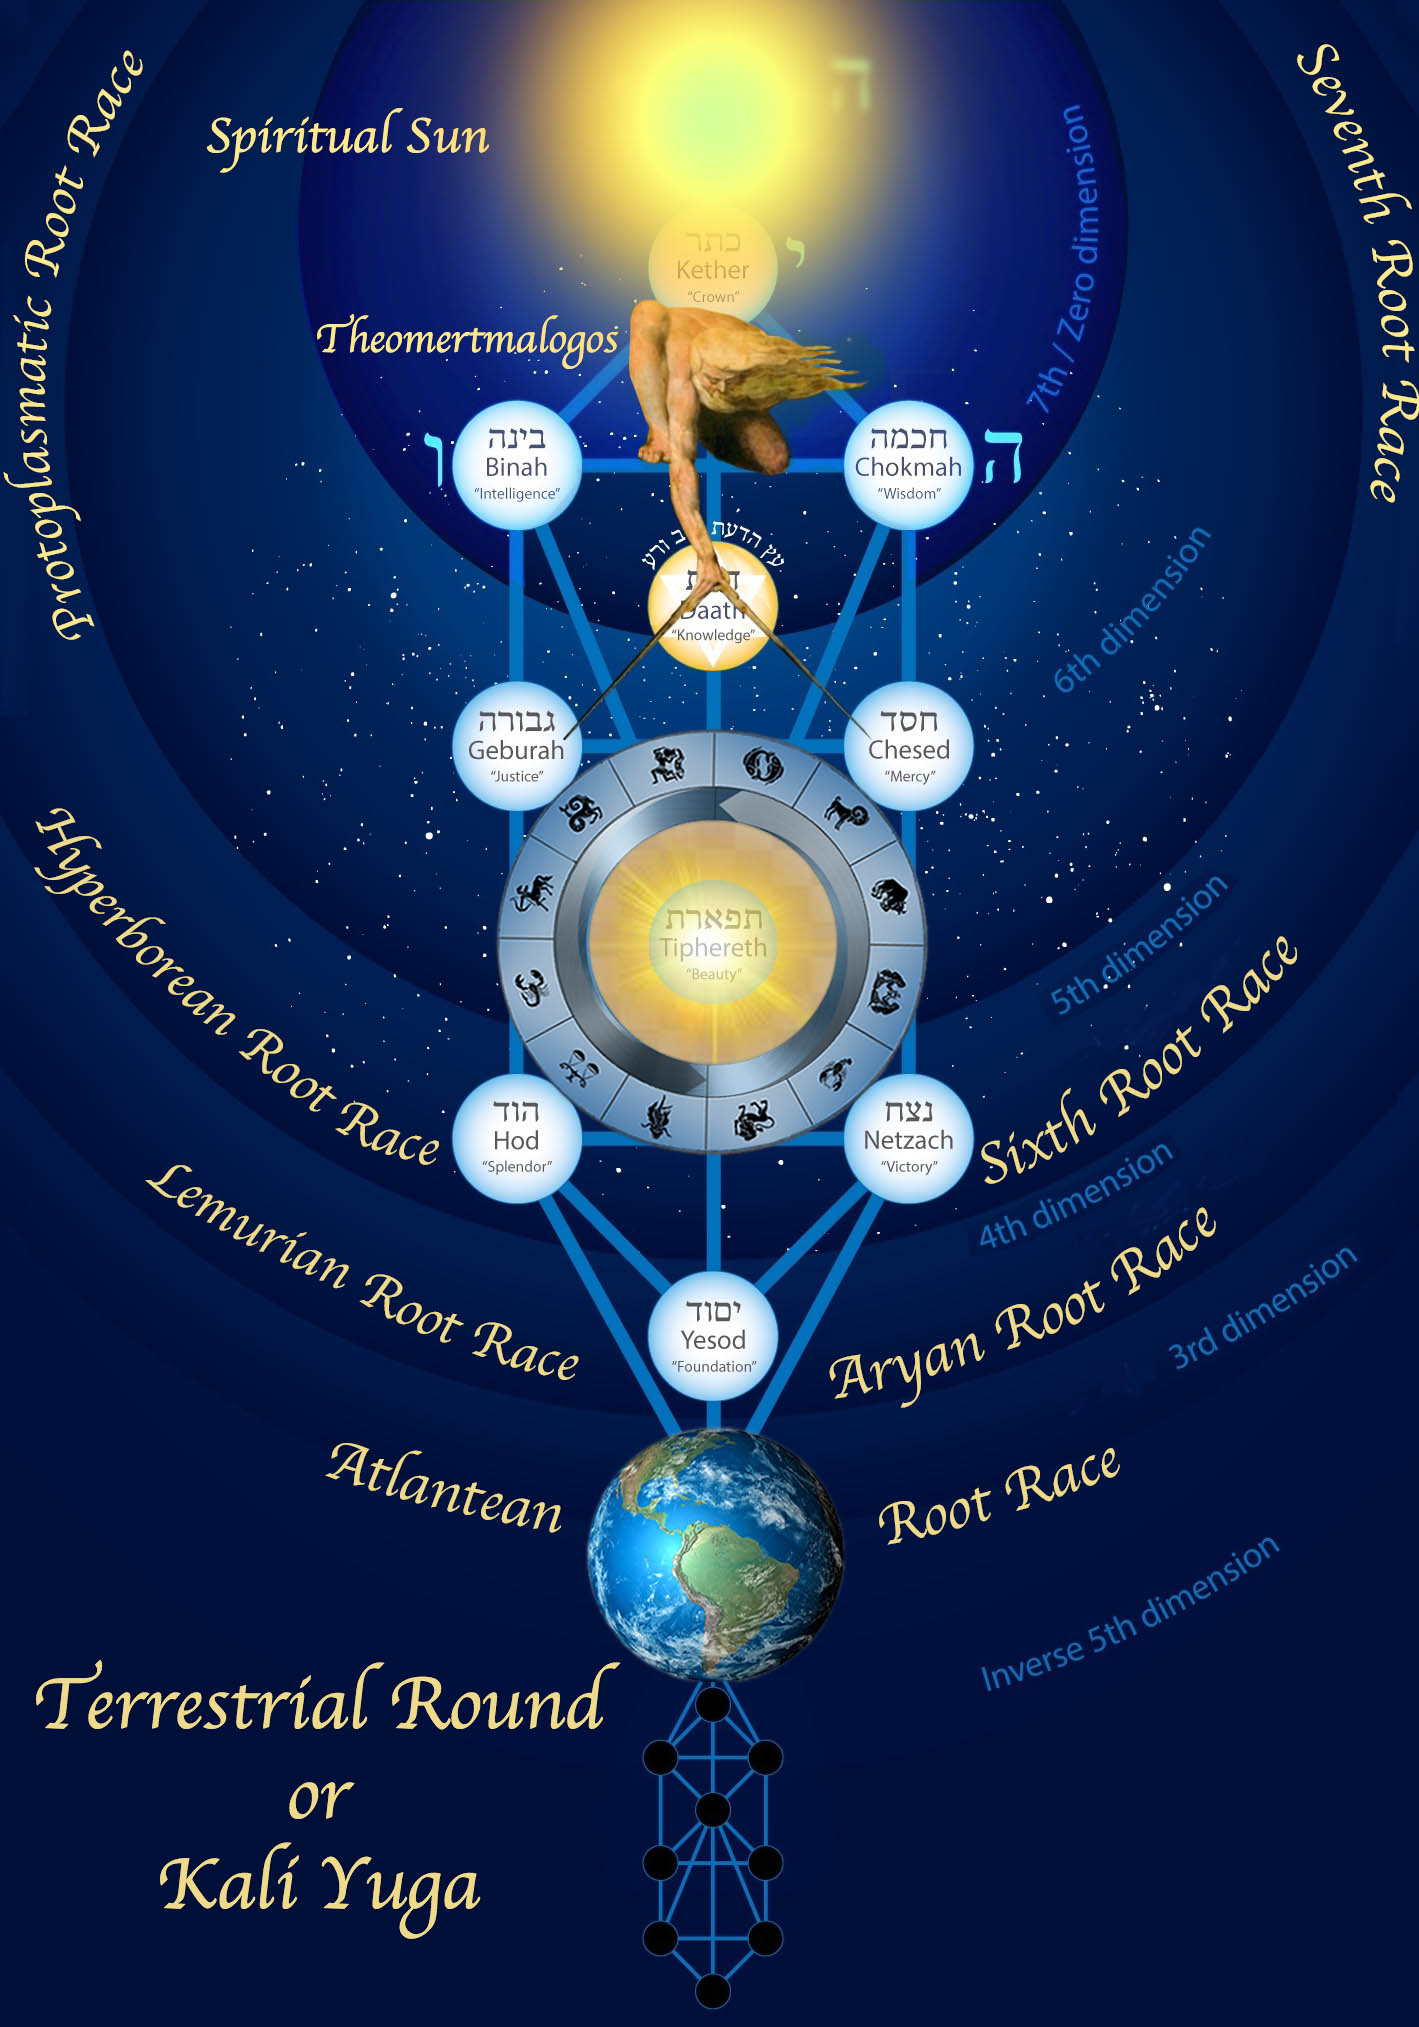 Terrestrial Round